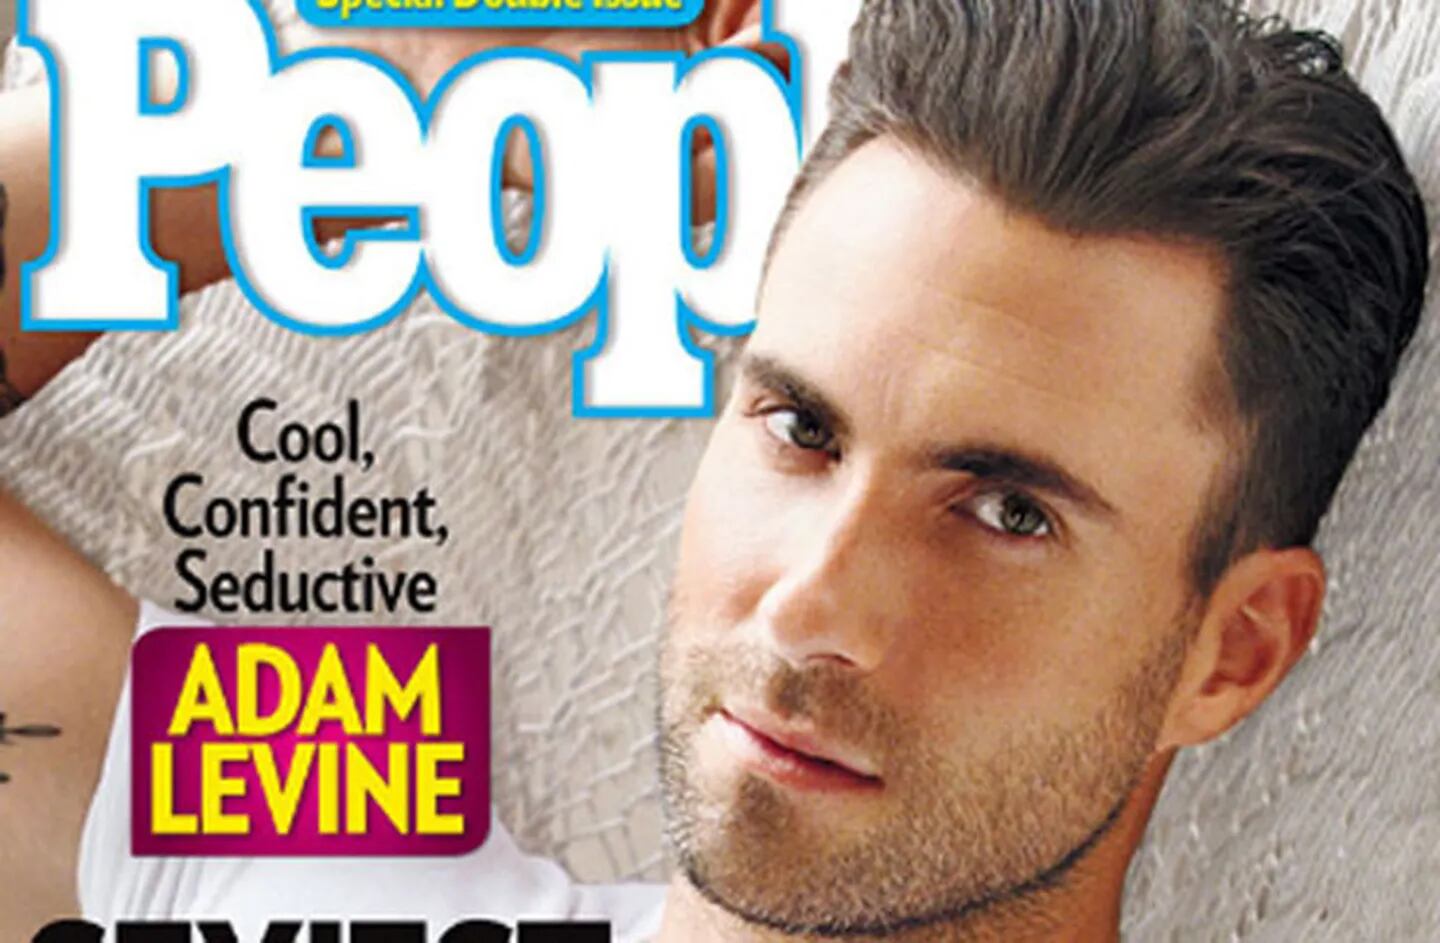 Adam Levine es el hombre más sexy de 2013 según la revista People. (Foto: People)